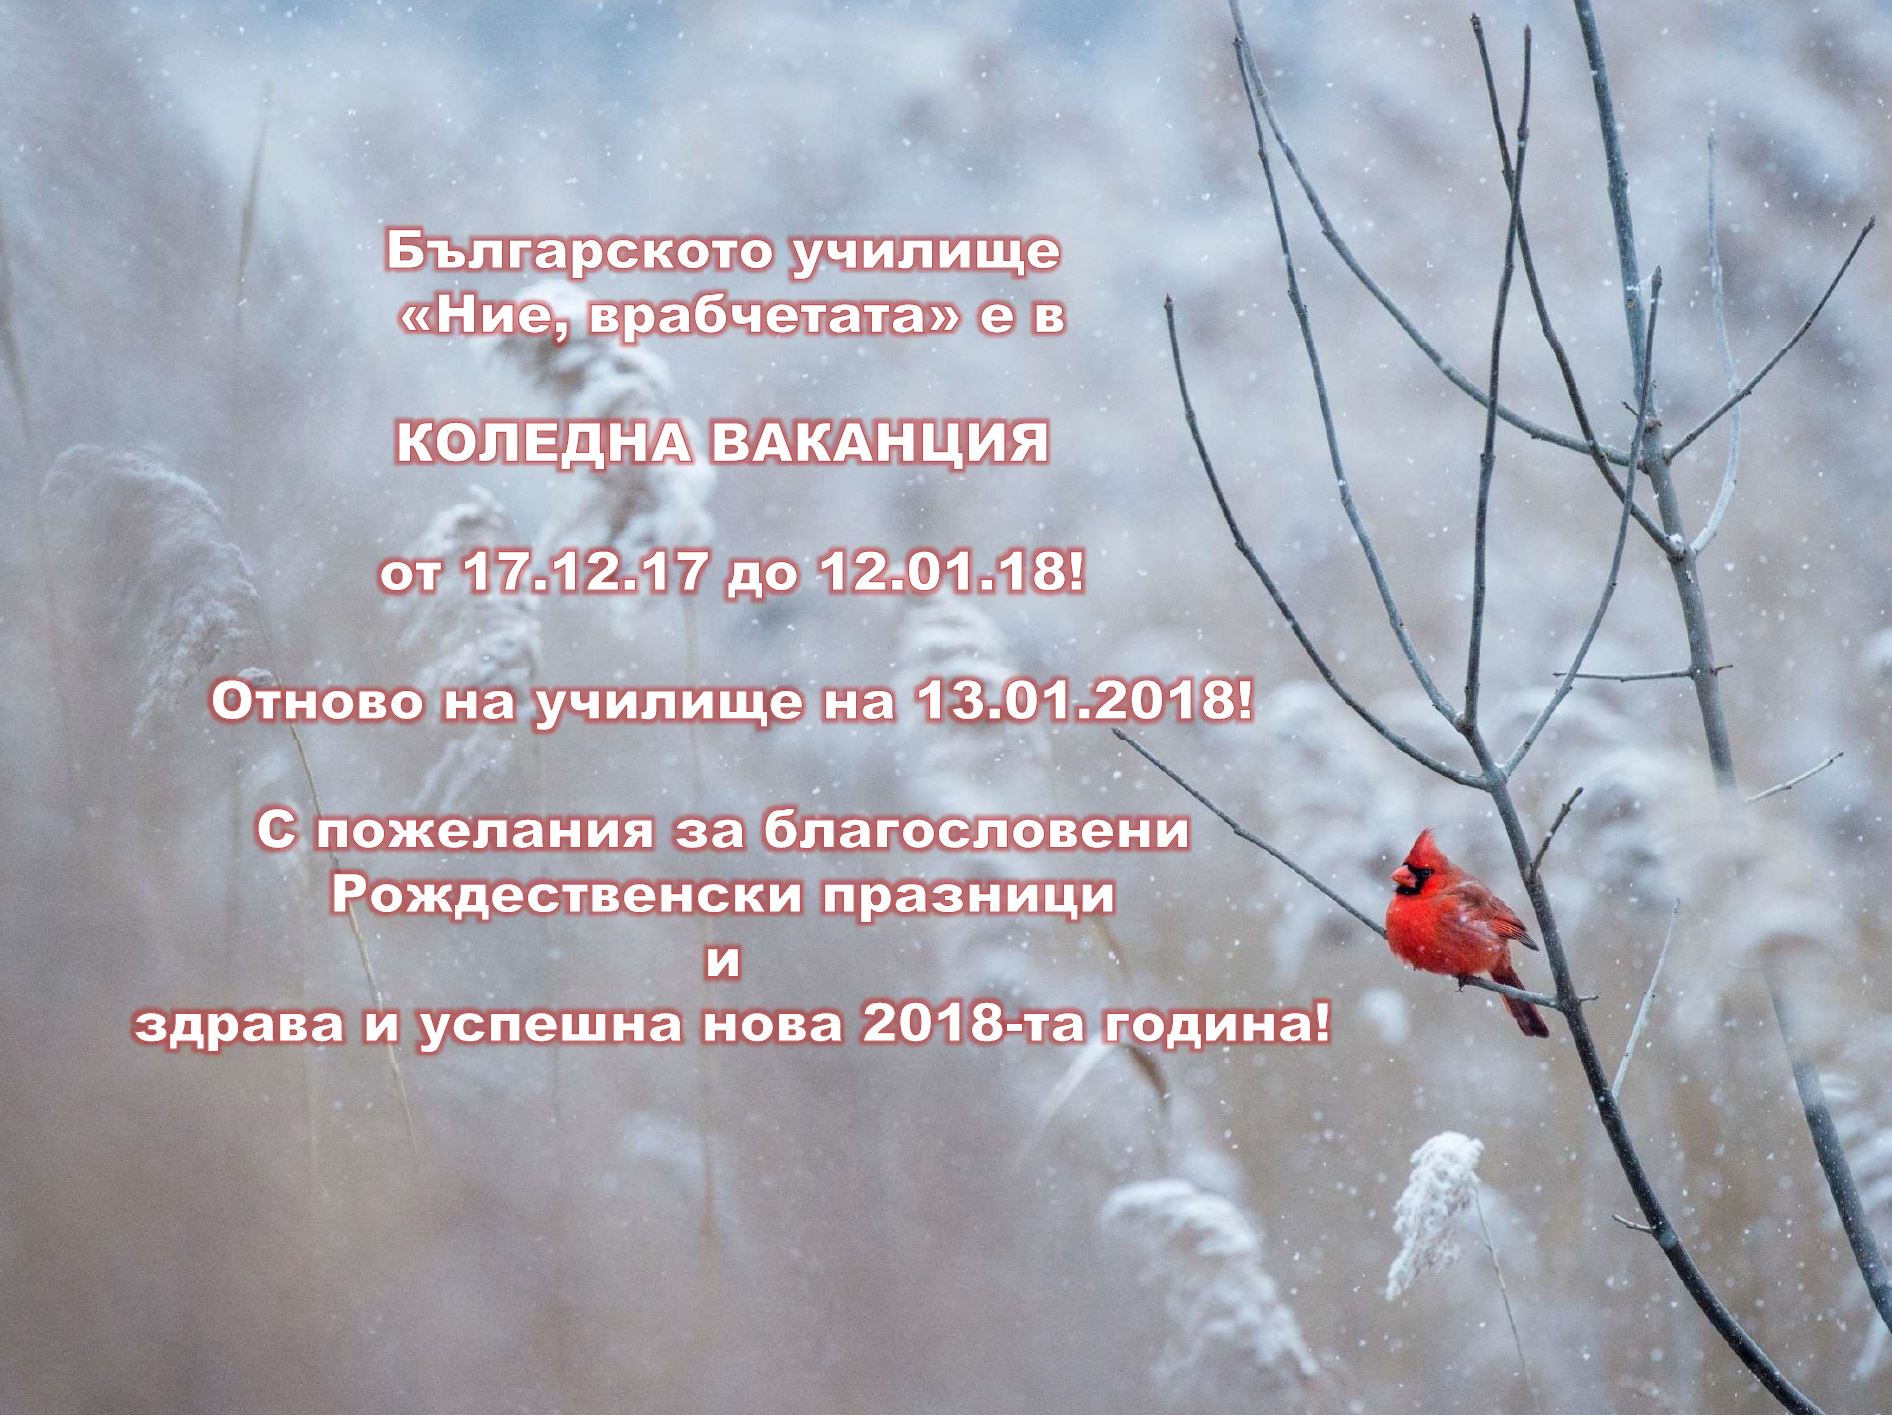 Българското училище «Ние, врабчетата» е в КОЛЕДНА ВАКАНЦИЯ от 17.12.17 до 12.01.18! Отново на училище на 13.01.2018!